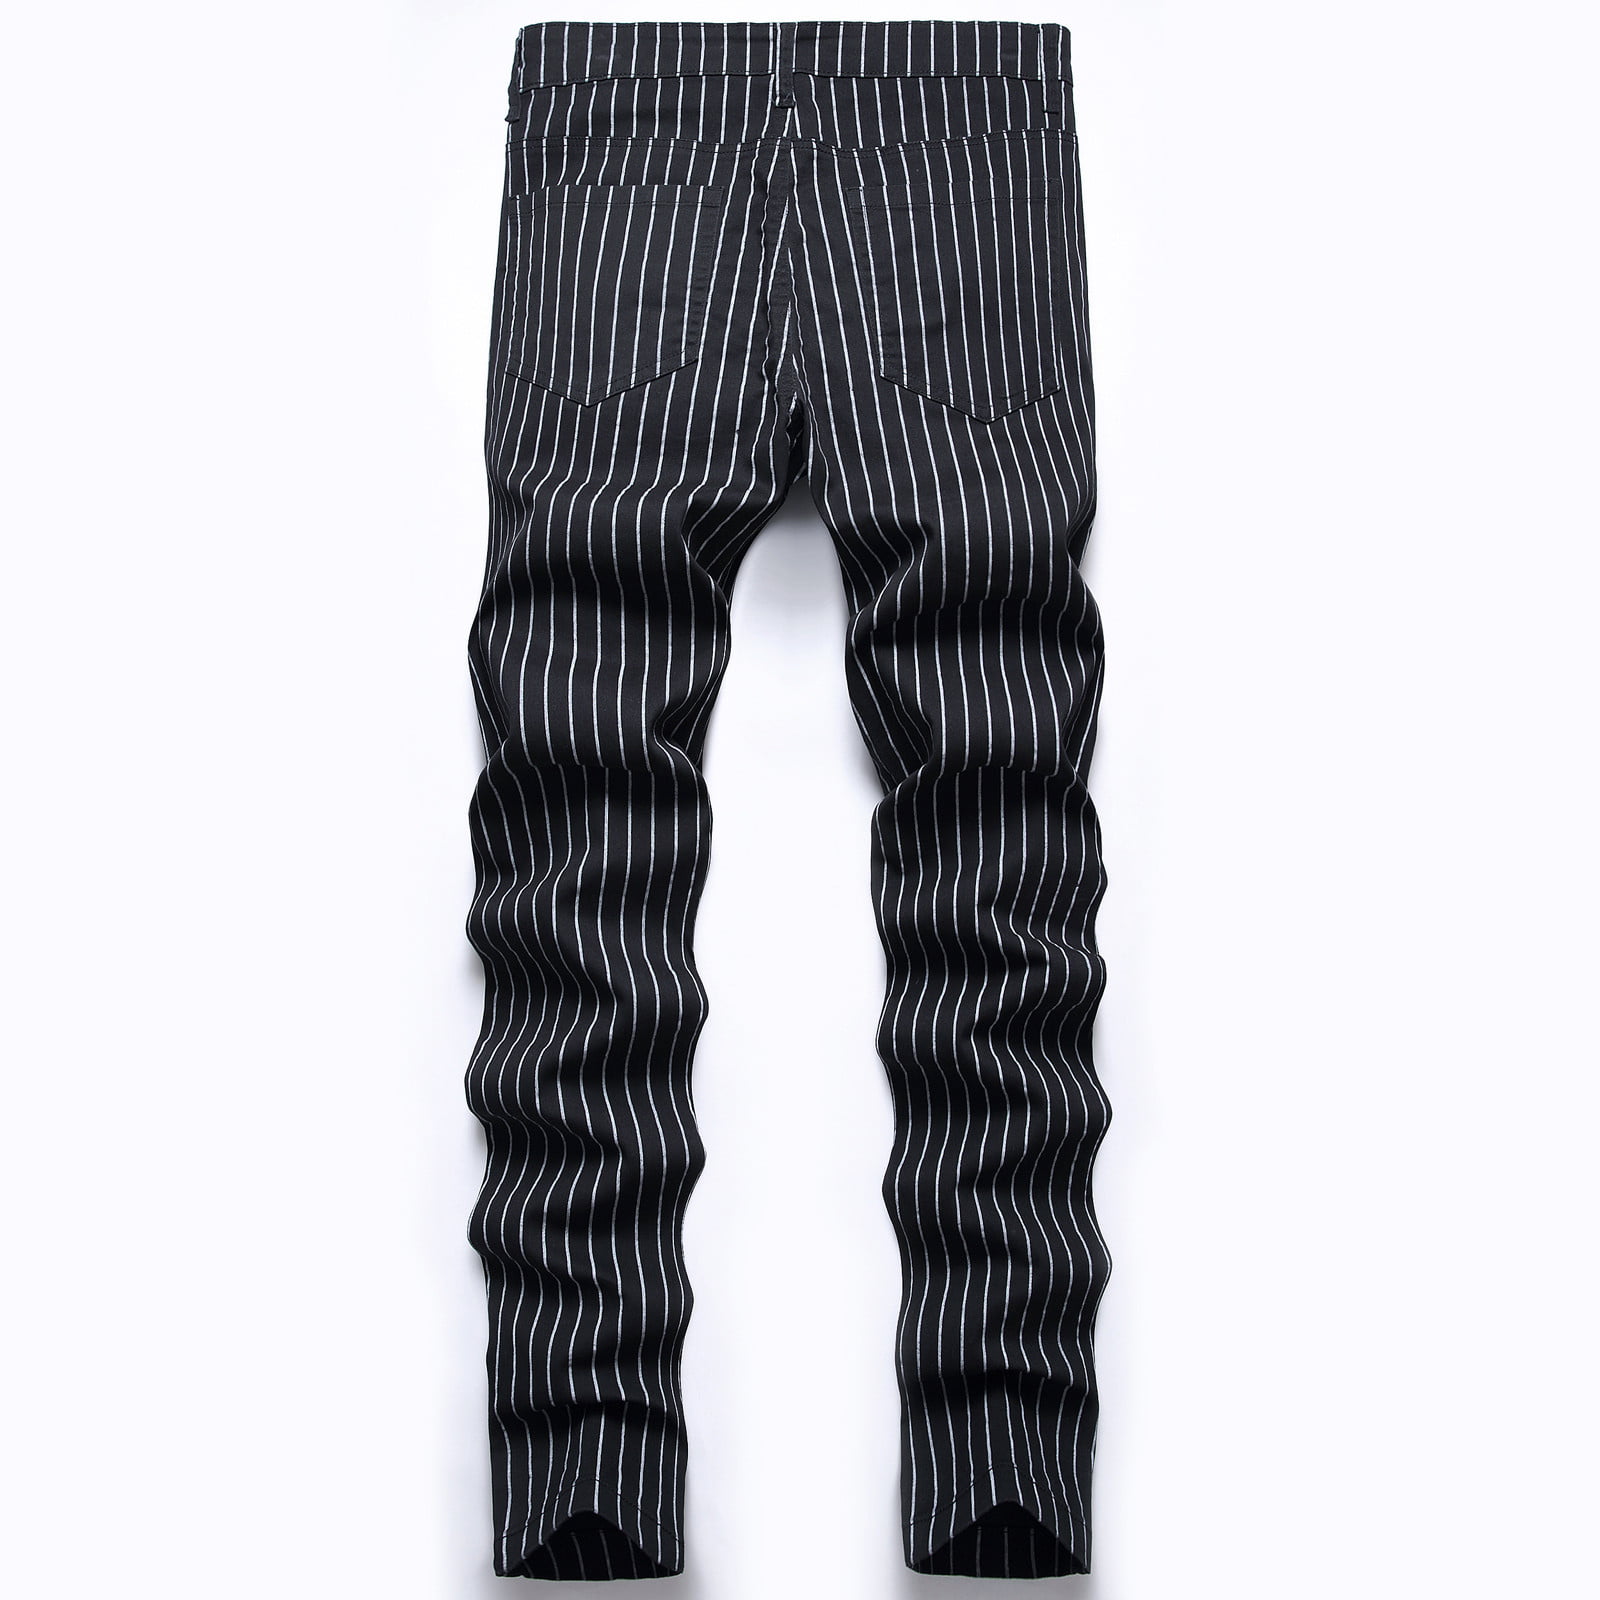 STRIPE PANTS OUTFIT IDEAS | Striped linen pants, Pants outfit men, Stripe  pants outfit